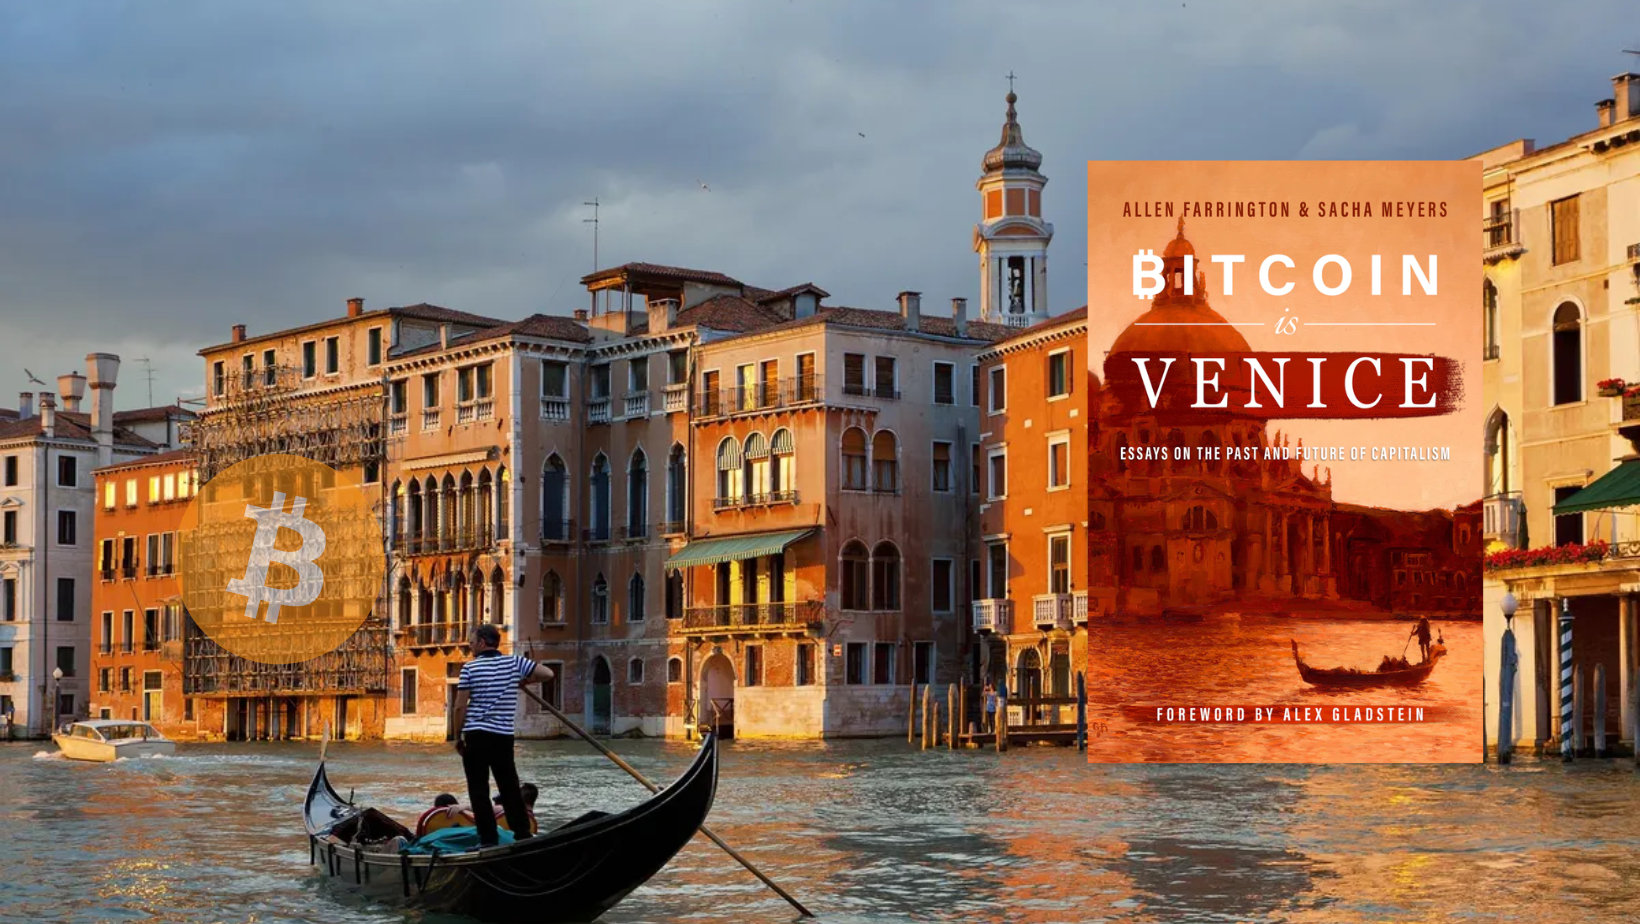 Bitcoin is Venice